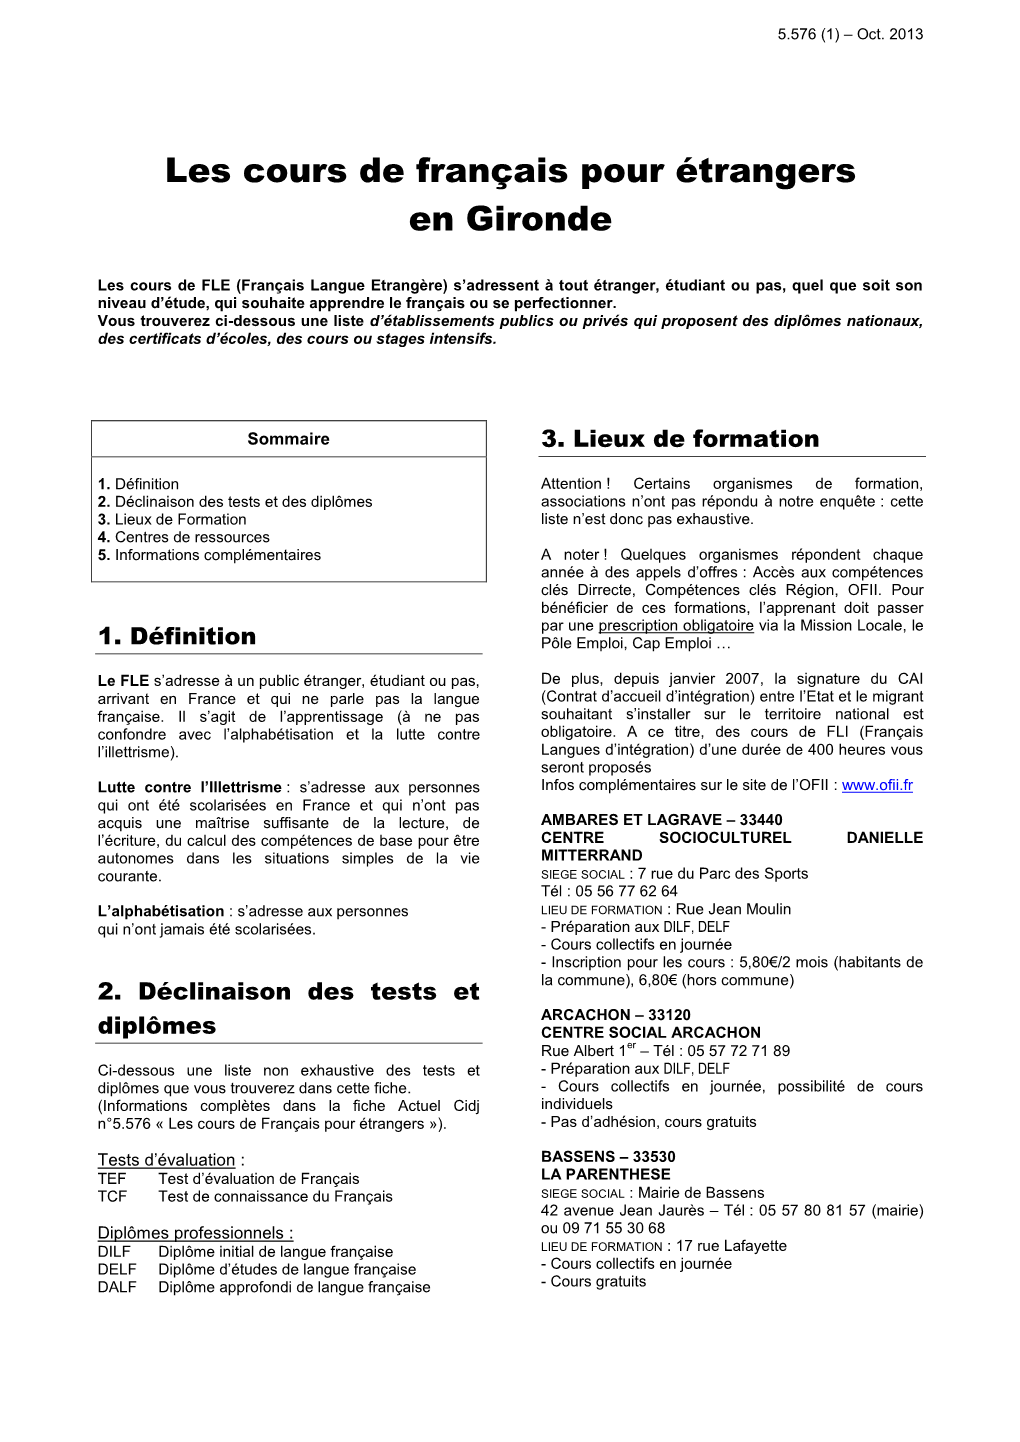 Les Cours De Français Pour Étrangers En Gironde